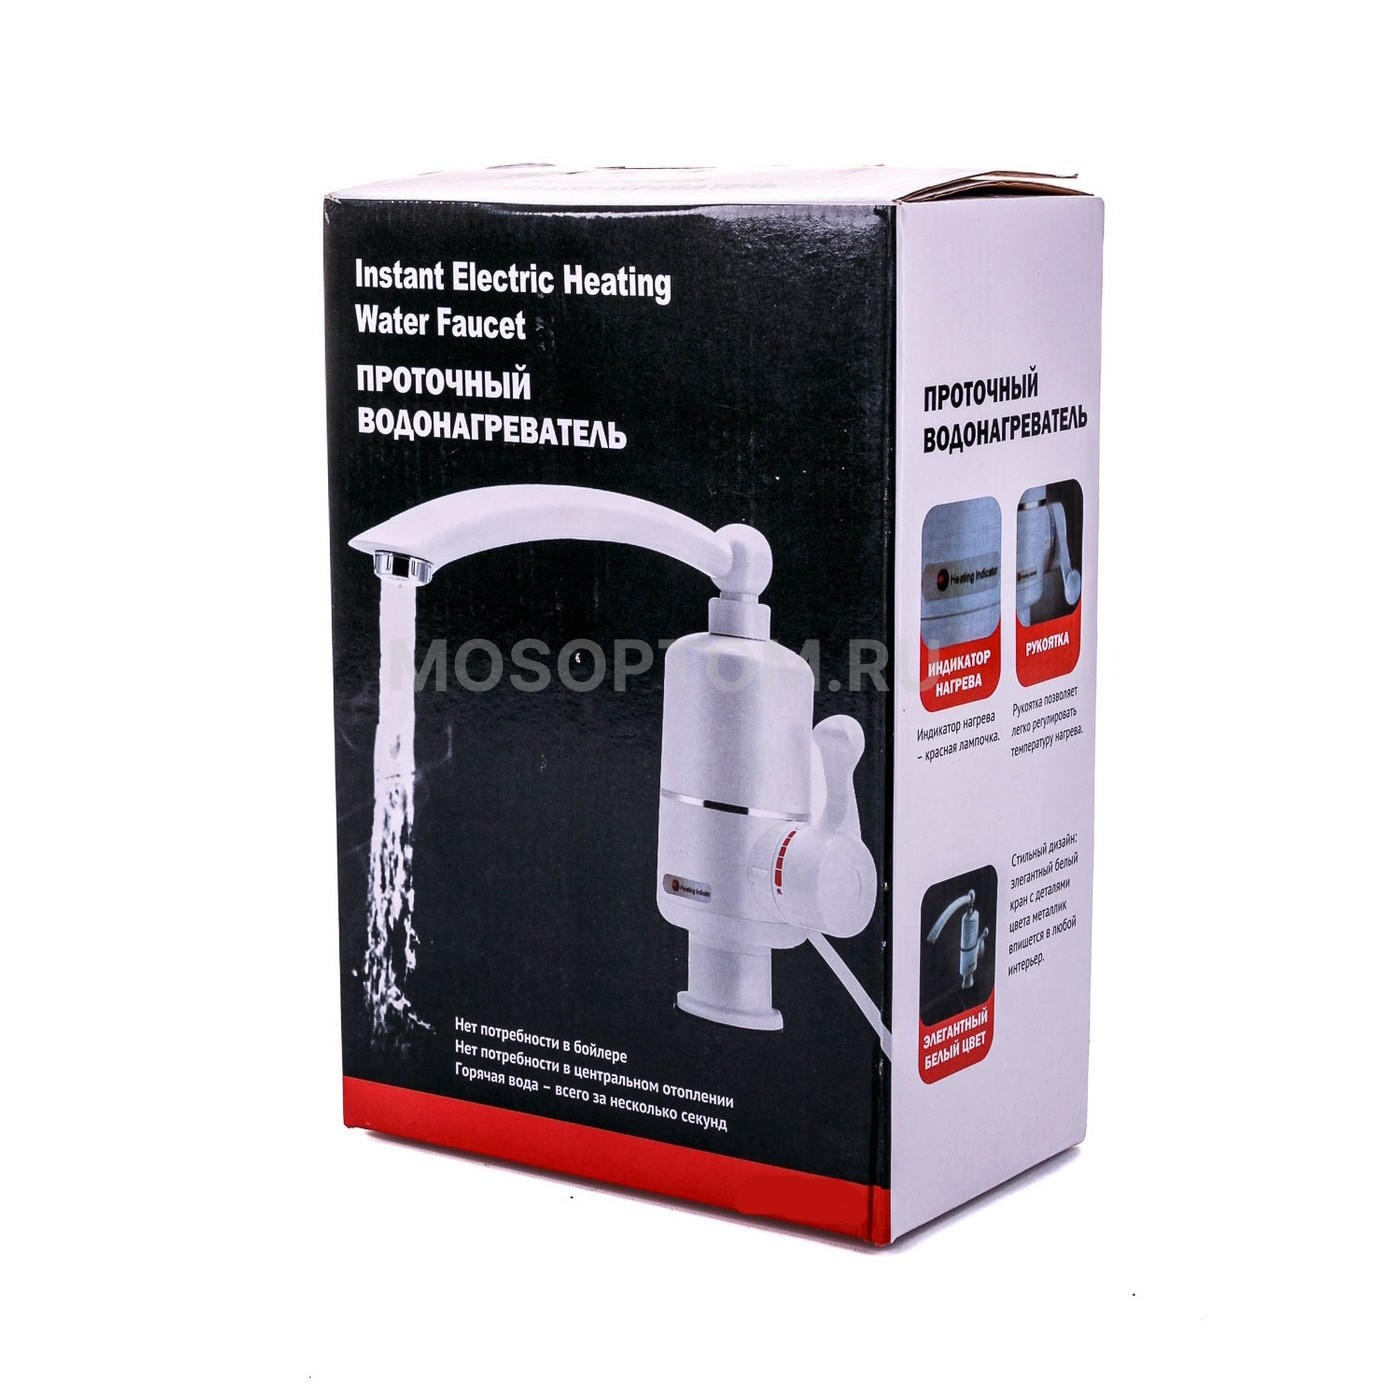 Проточный водонагреватель Instant Electric Heating Water Faucet RX-004 оптом